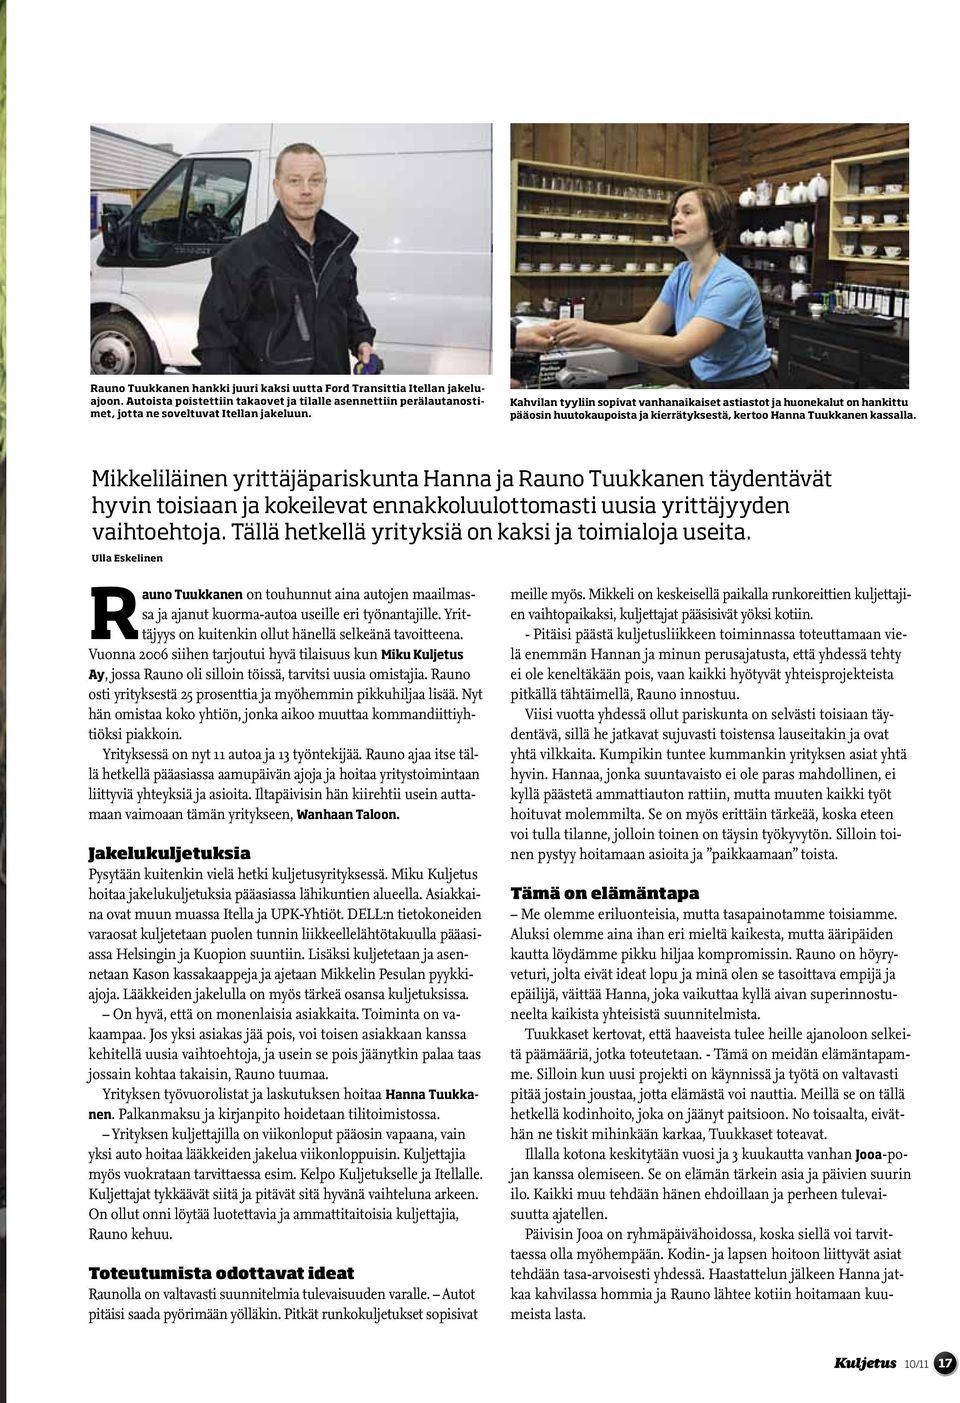 Mikkeliläinen yrittäjäpariskunta Hanna ja Rauno Tuukkanen täydentävät hyvin toisiaan ja kokeilevat ennakkoluulottomasti uusia yrittäjyyden vaihtoehtoja.